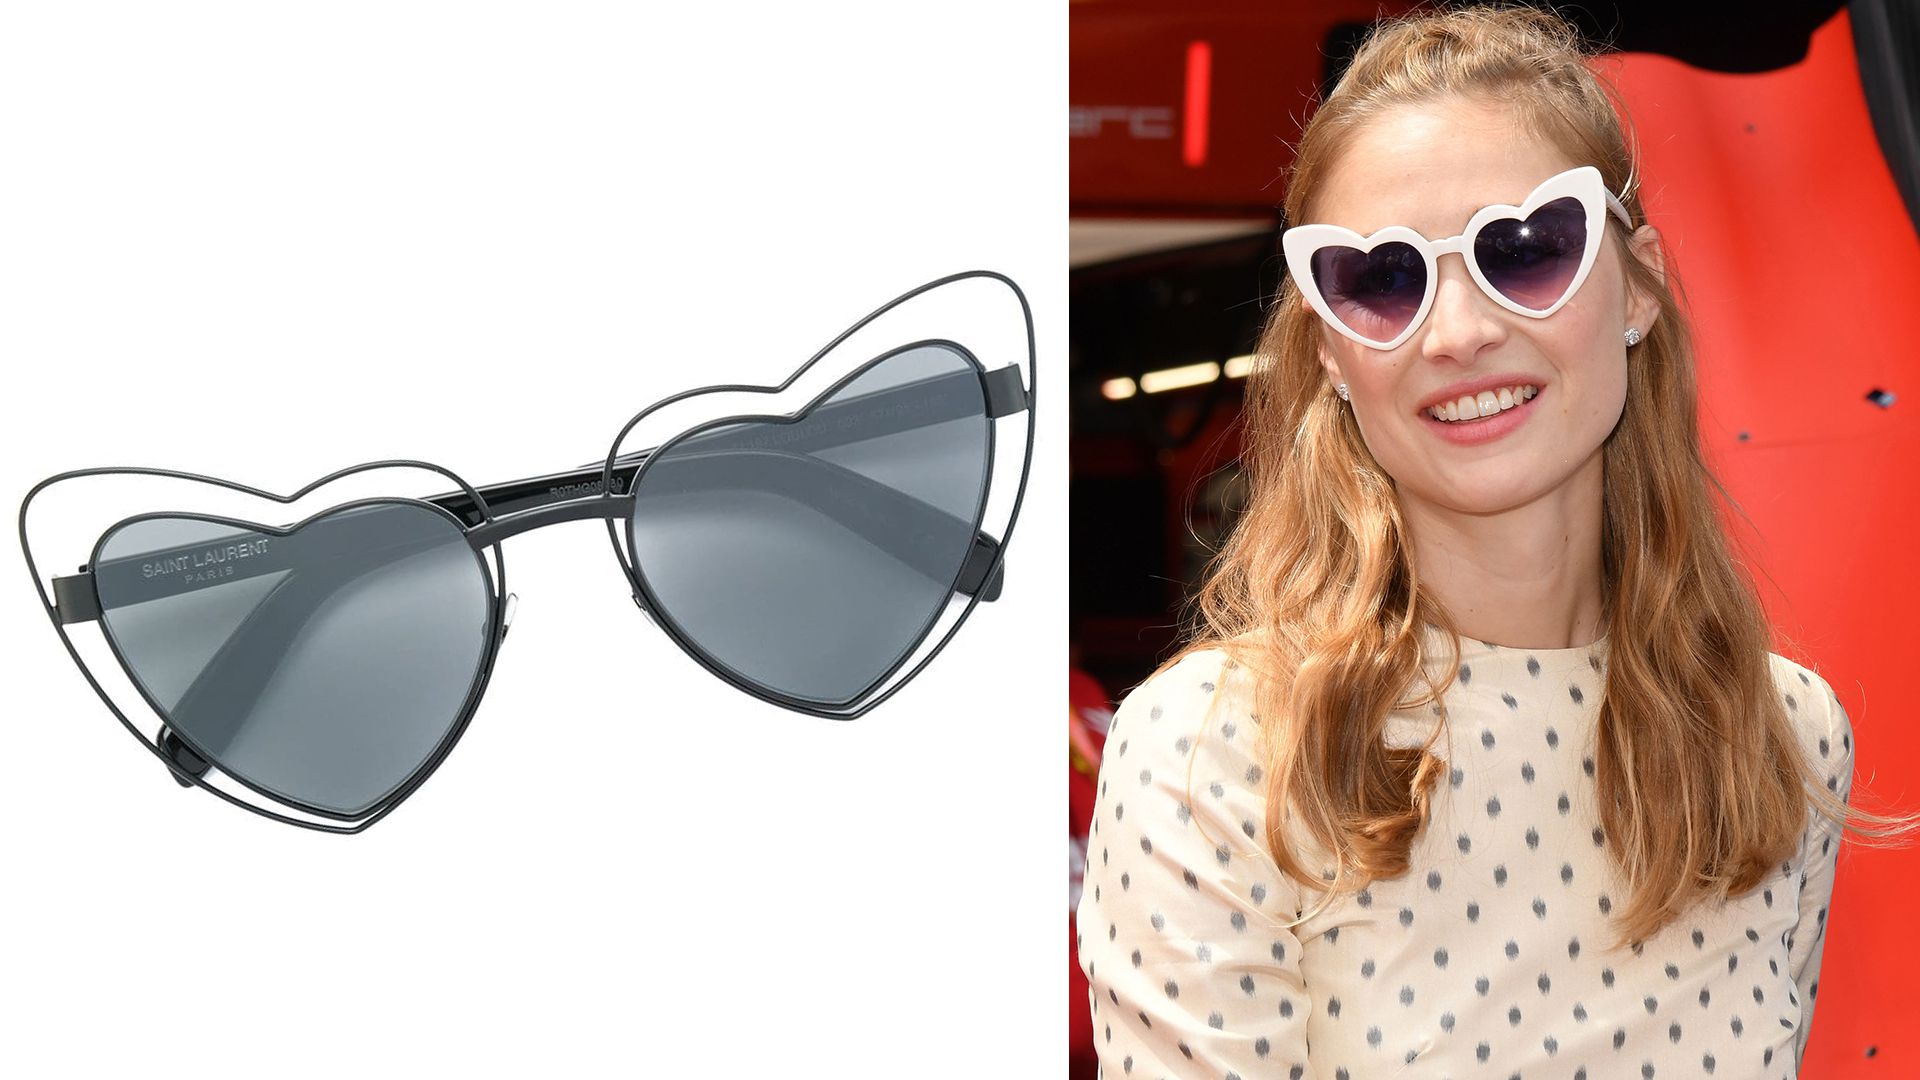 Las lentes de sol Lolita de Saint Laurent que arrasan en este verano europeo. Así se la vio a Beatrice Borromeo usándolas esta semana en el Grand Prix de Mónaco.